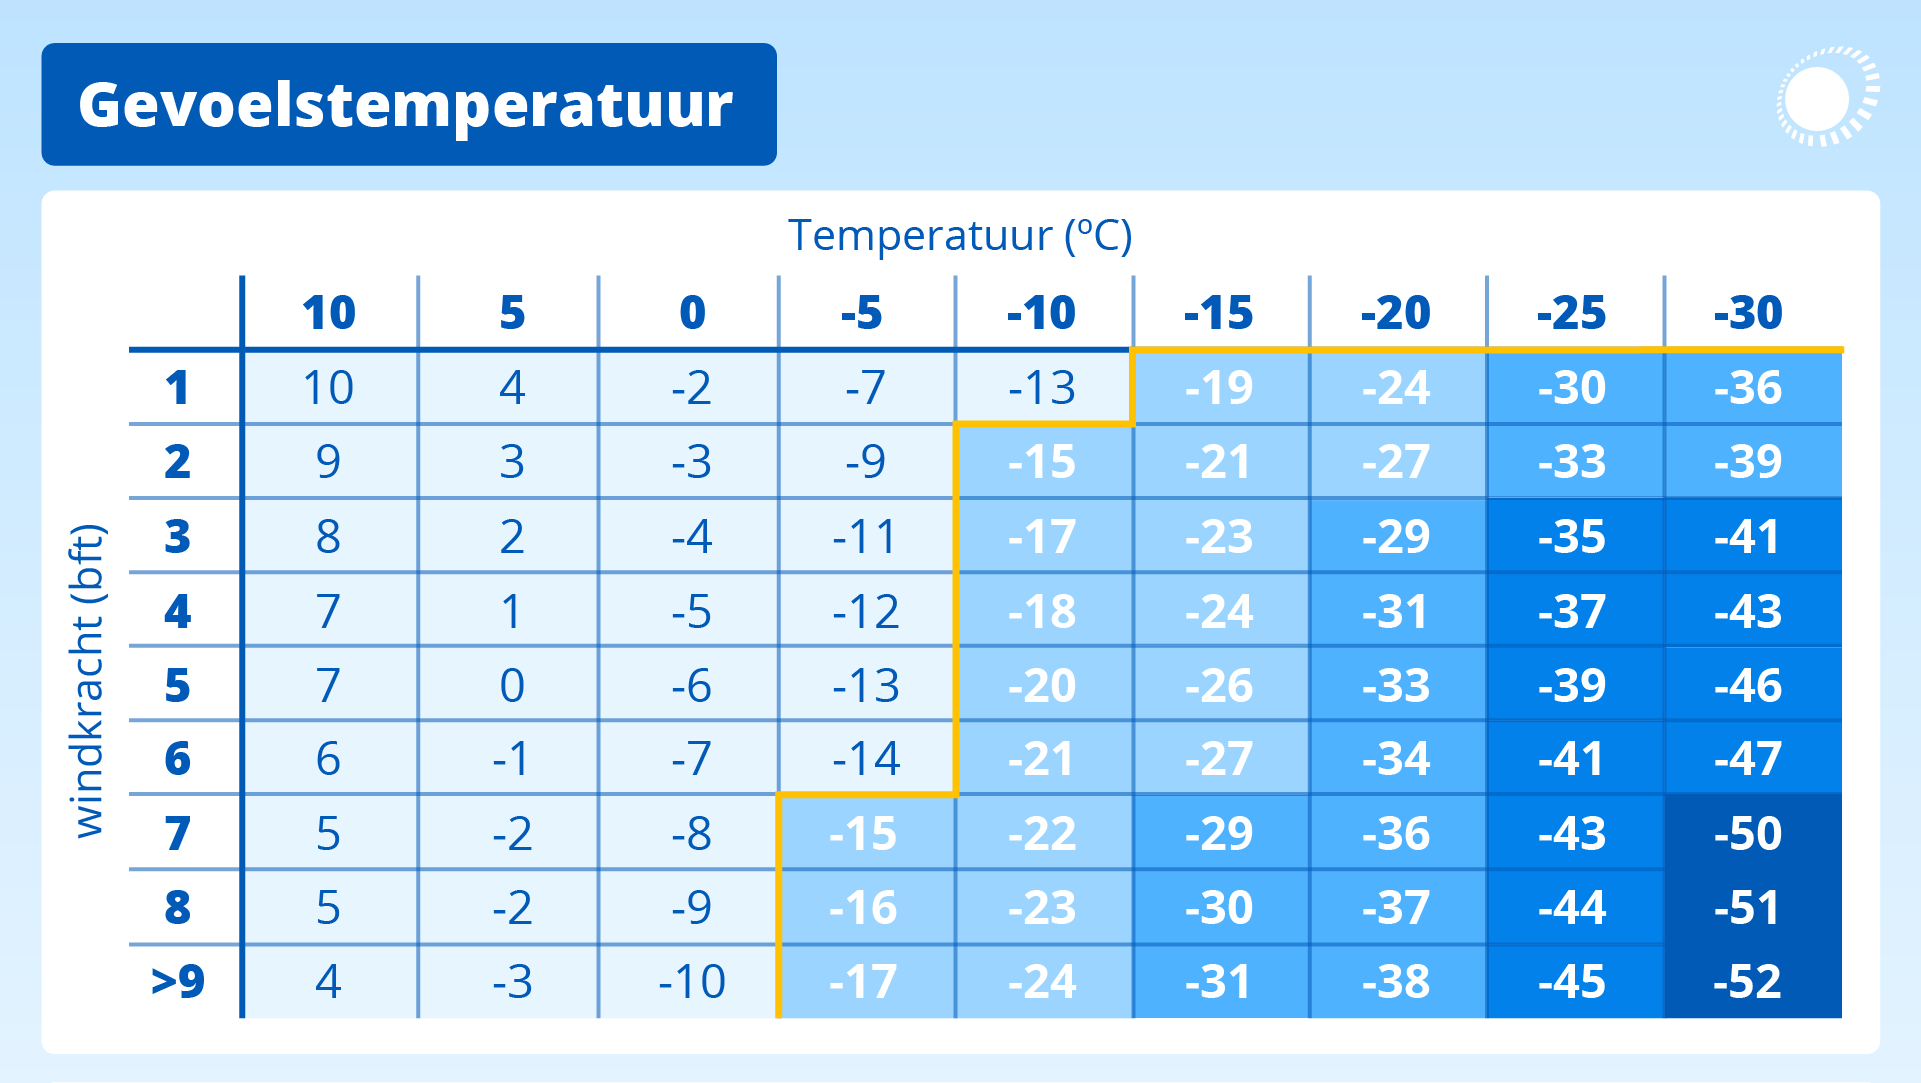 De gevoelstemperatuur wordt bepaald door de temperatuur en de windkracht. 